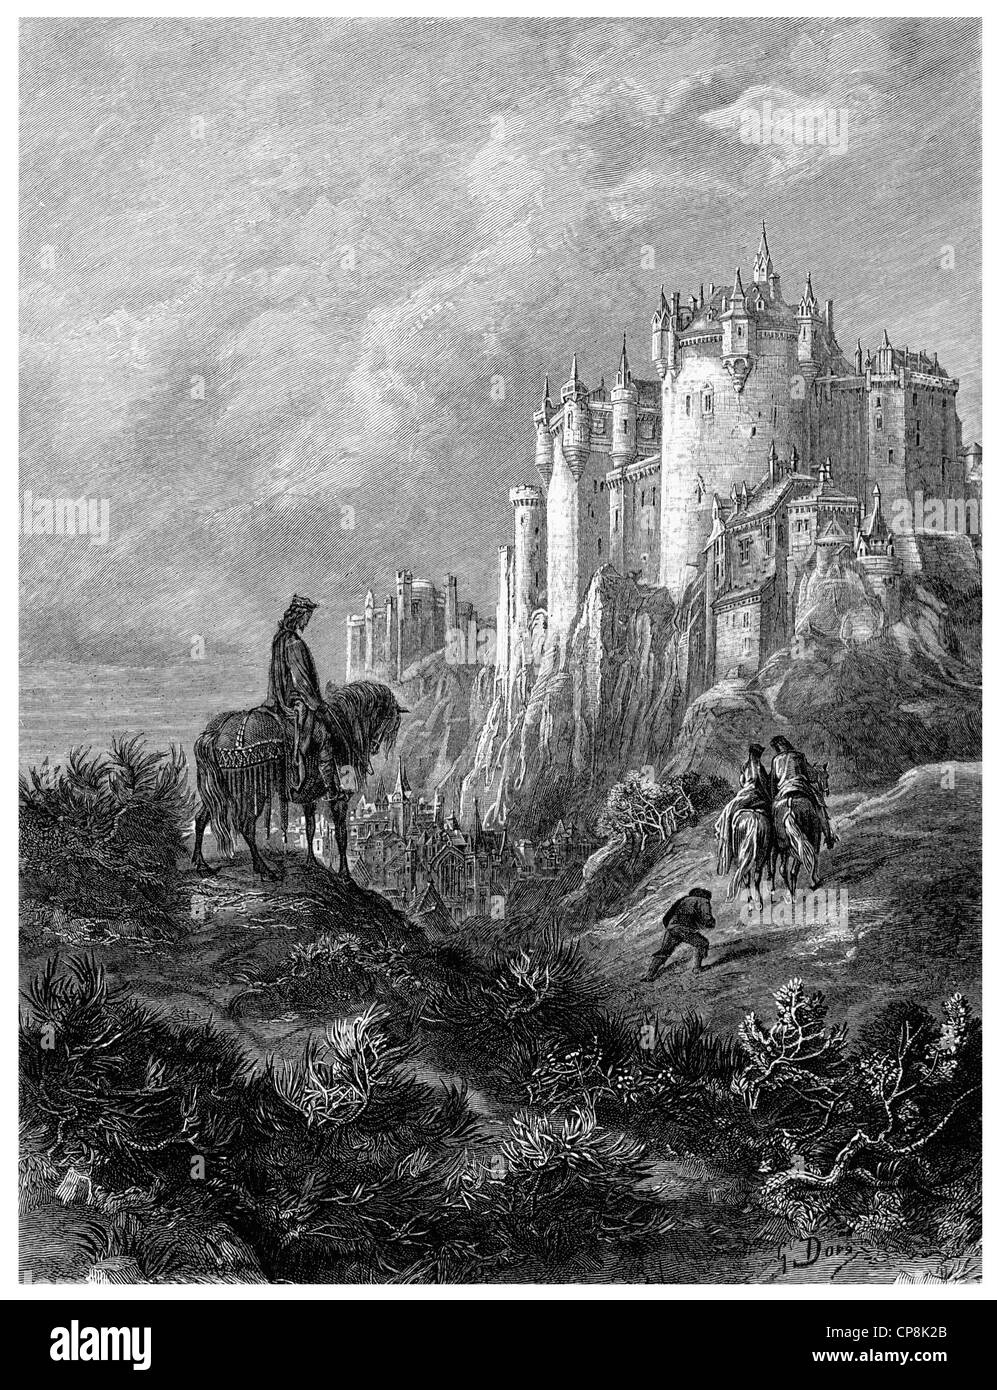 Illustration historique après le livre Idylls of the King par Alfred Tennyson, 1er baron Tennyson, 1809 - 1892, un poète britannique Banque D'Images